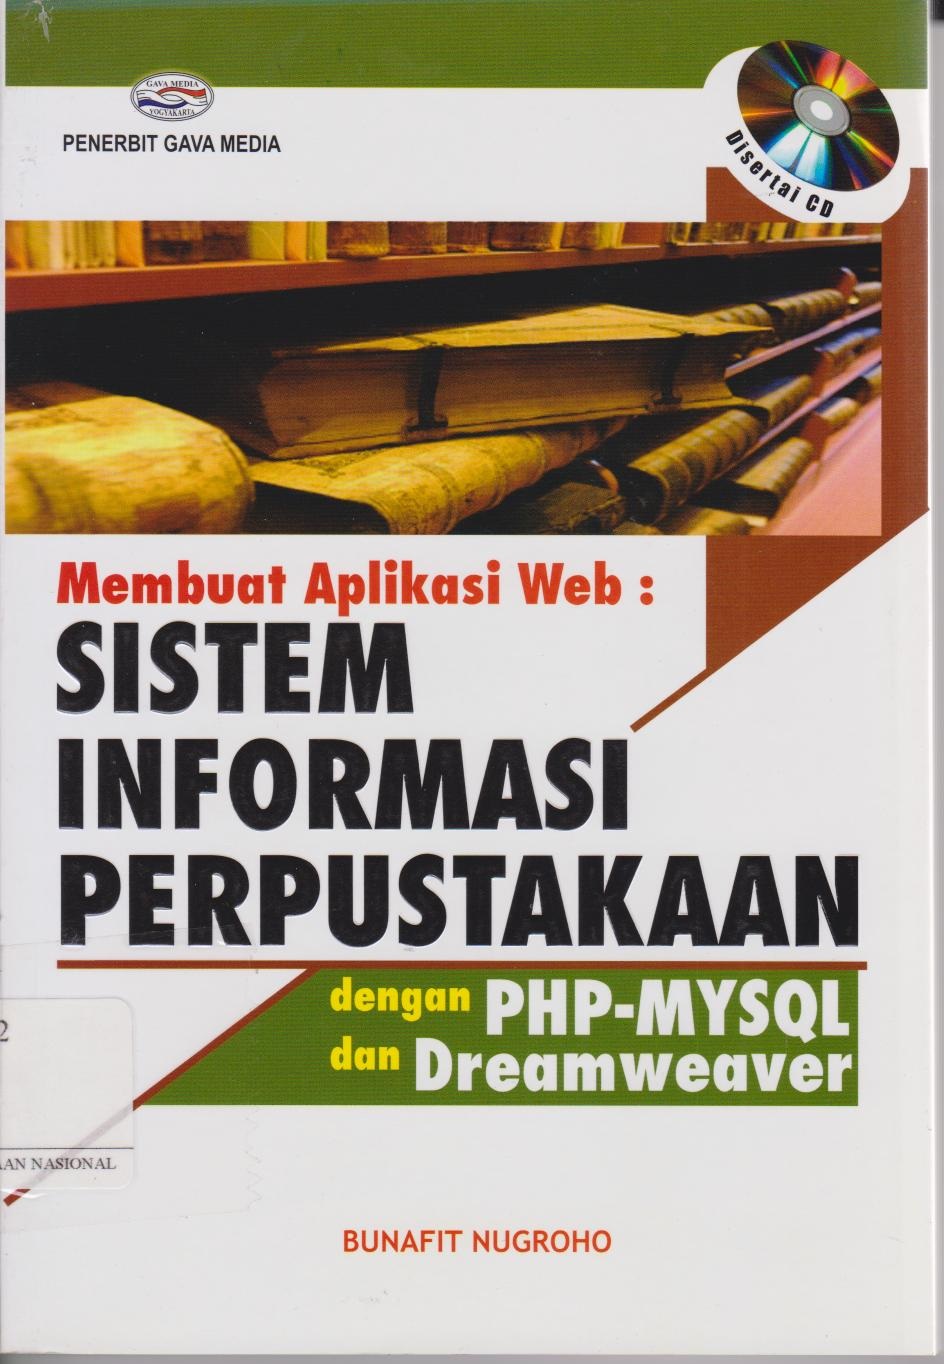 Membuat Aplikasi Web : Sistem Informasi Perpustakaan Dengan PHP-MYSQL Dan Dreamweaver